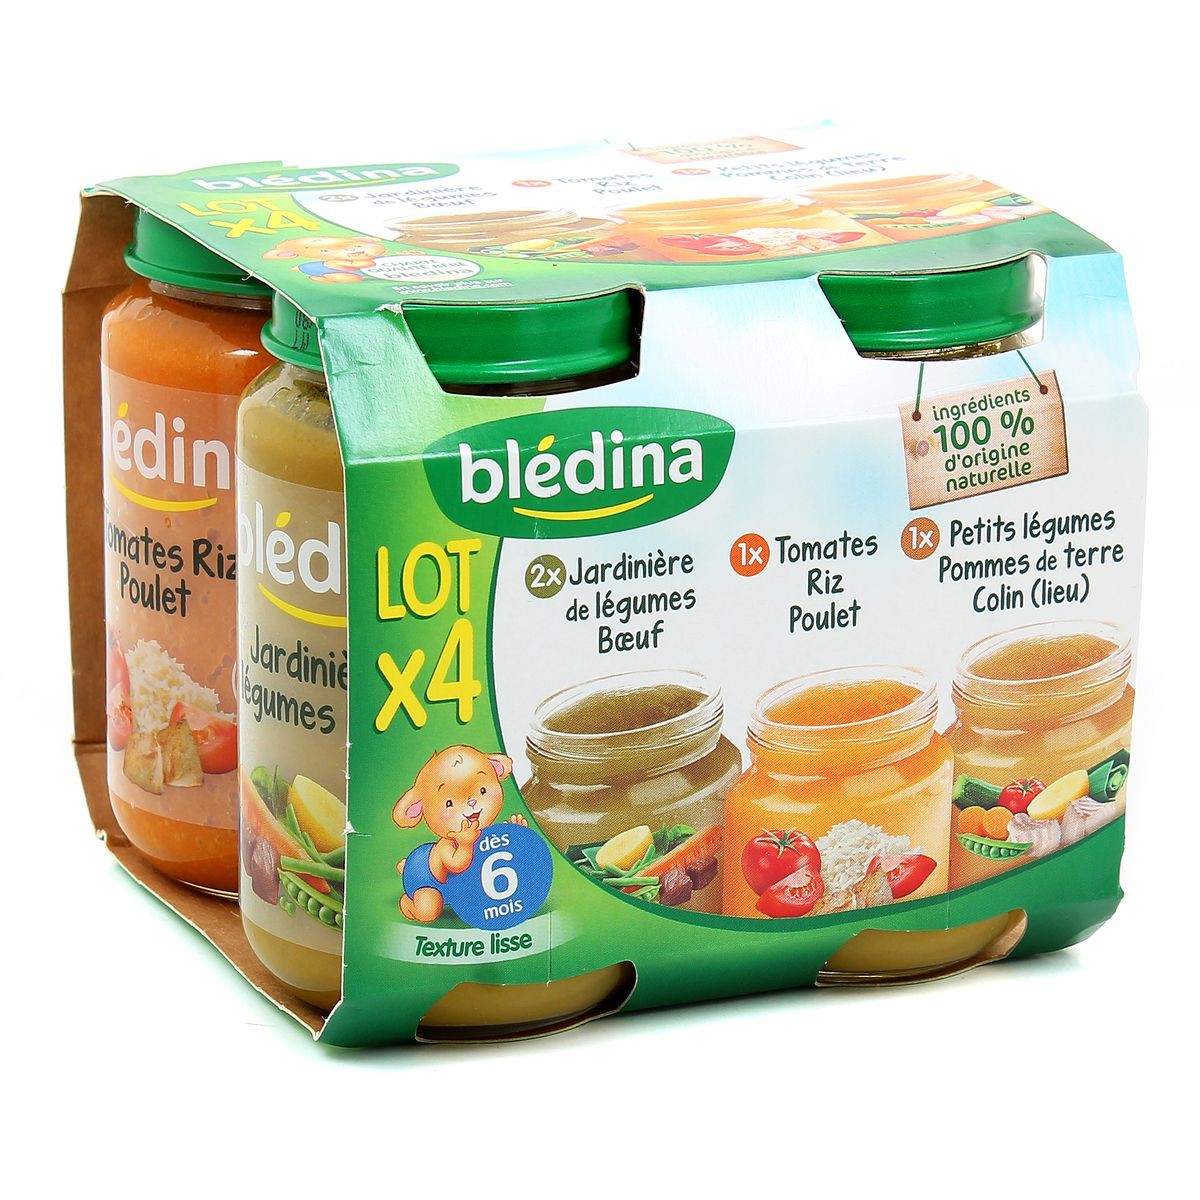 blédina Bledina Pots Pour Bébé Dès 6 Mois - Pommes Framboises 4 X